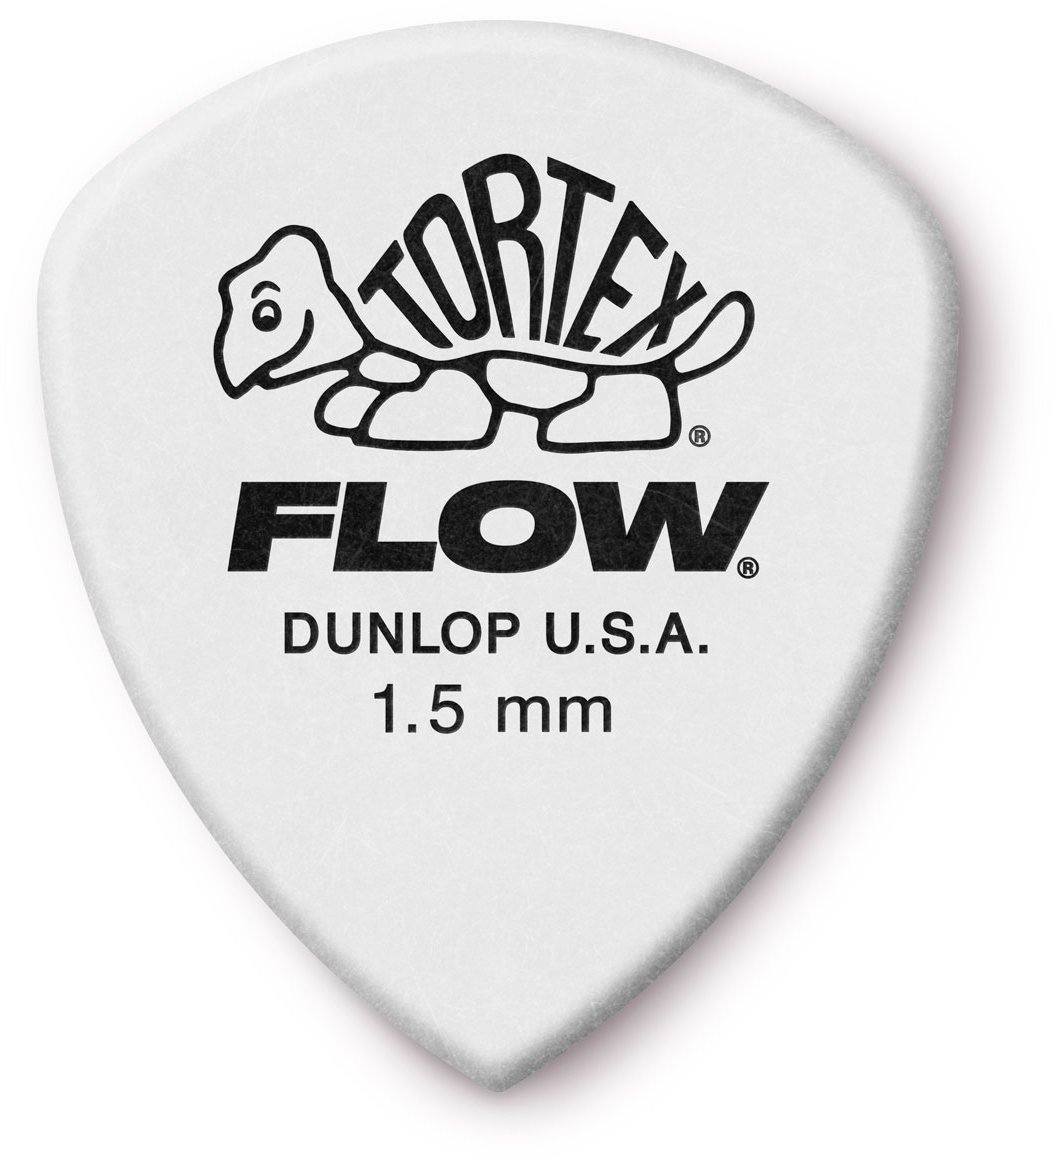 Palheta Dunlop Tortex Flow 1.5 Palheta